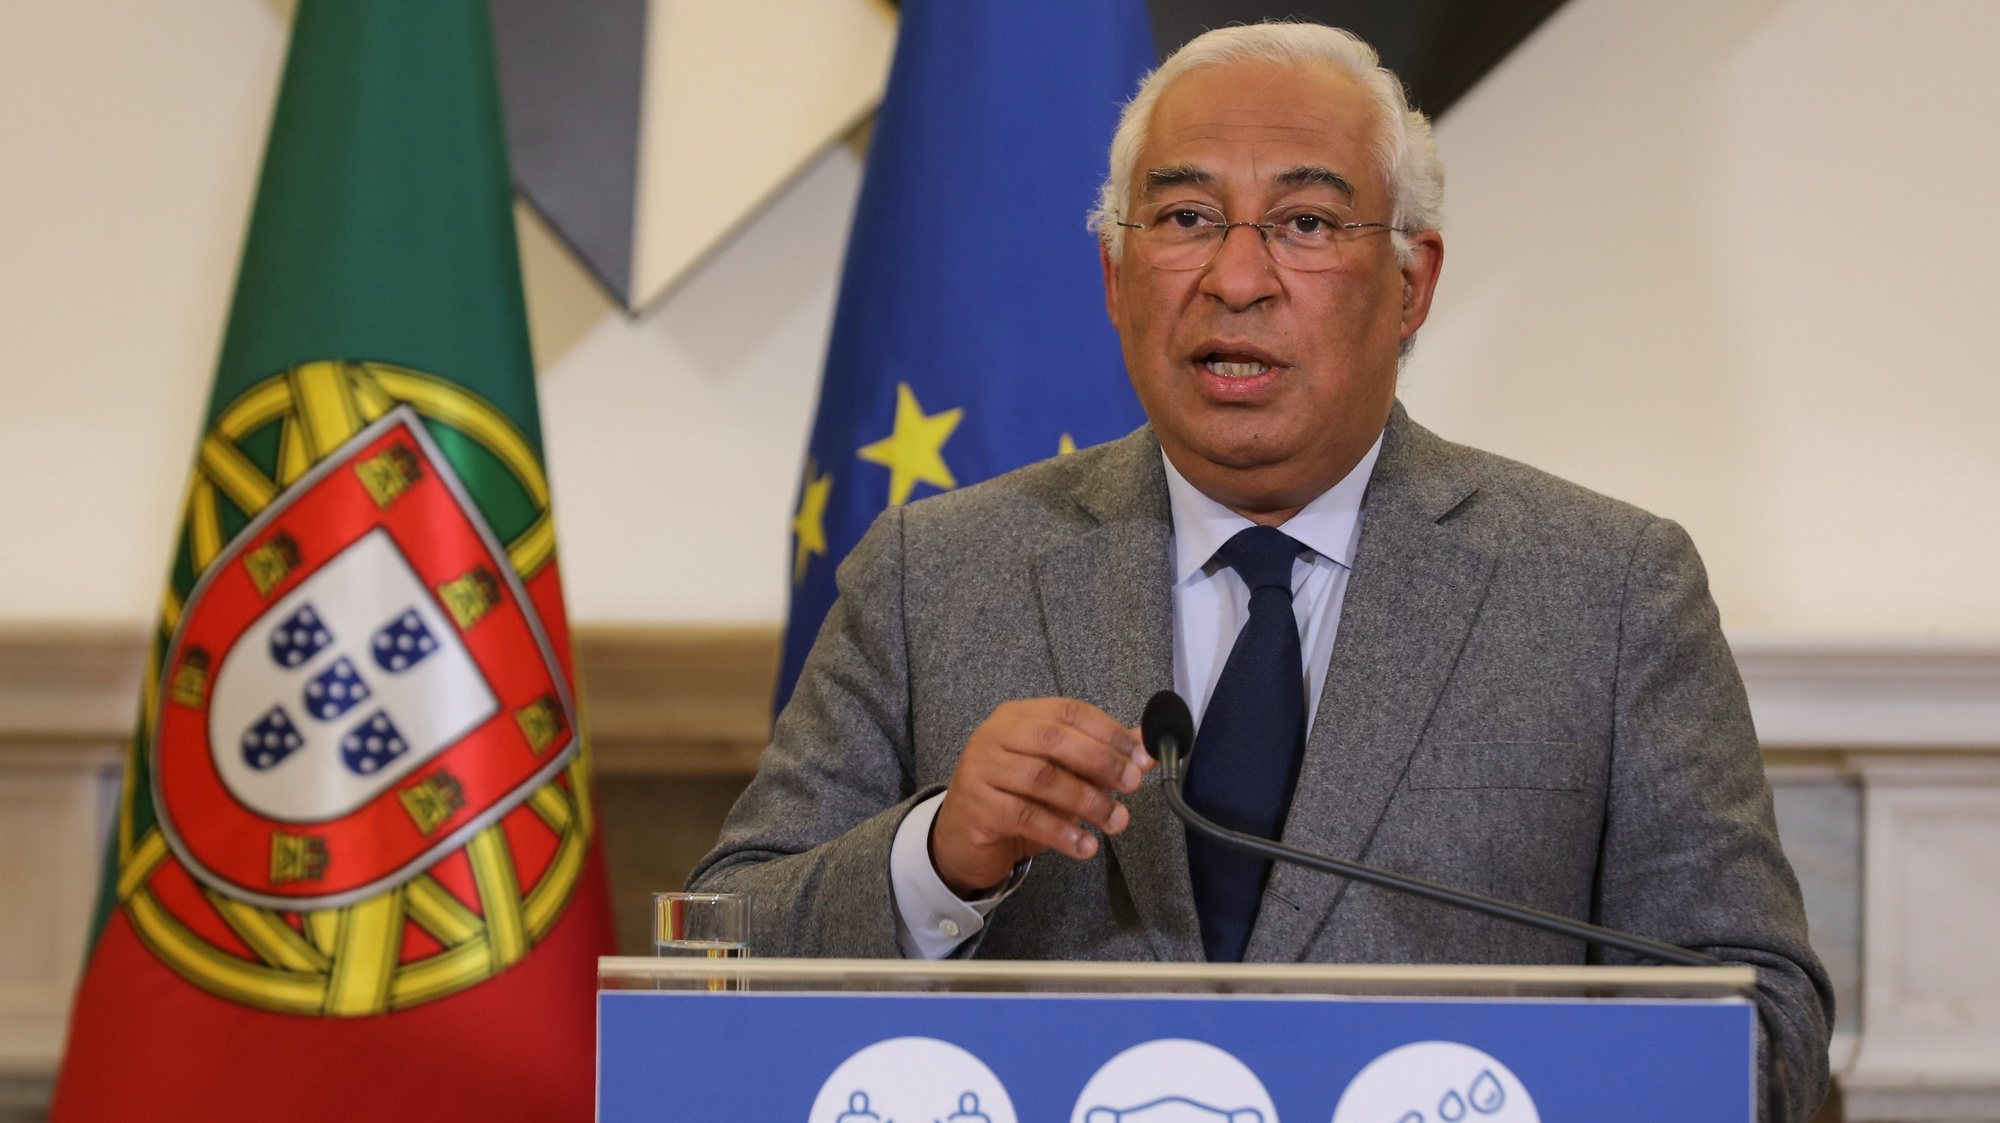 O primeiro-ministro, António Costa, intervém durante uma conferência de imprensa após a reunião do Conselho de Ministros, Palácio de São Bento, Lisboa, 18 de janeiro de 2020. MIGUEL A. LOPES/LUSA